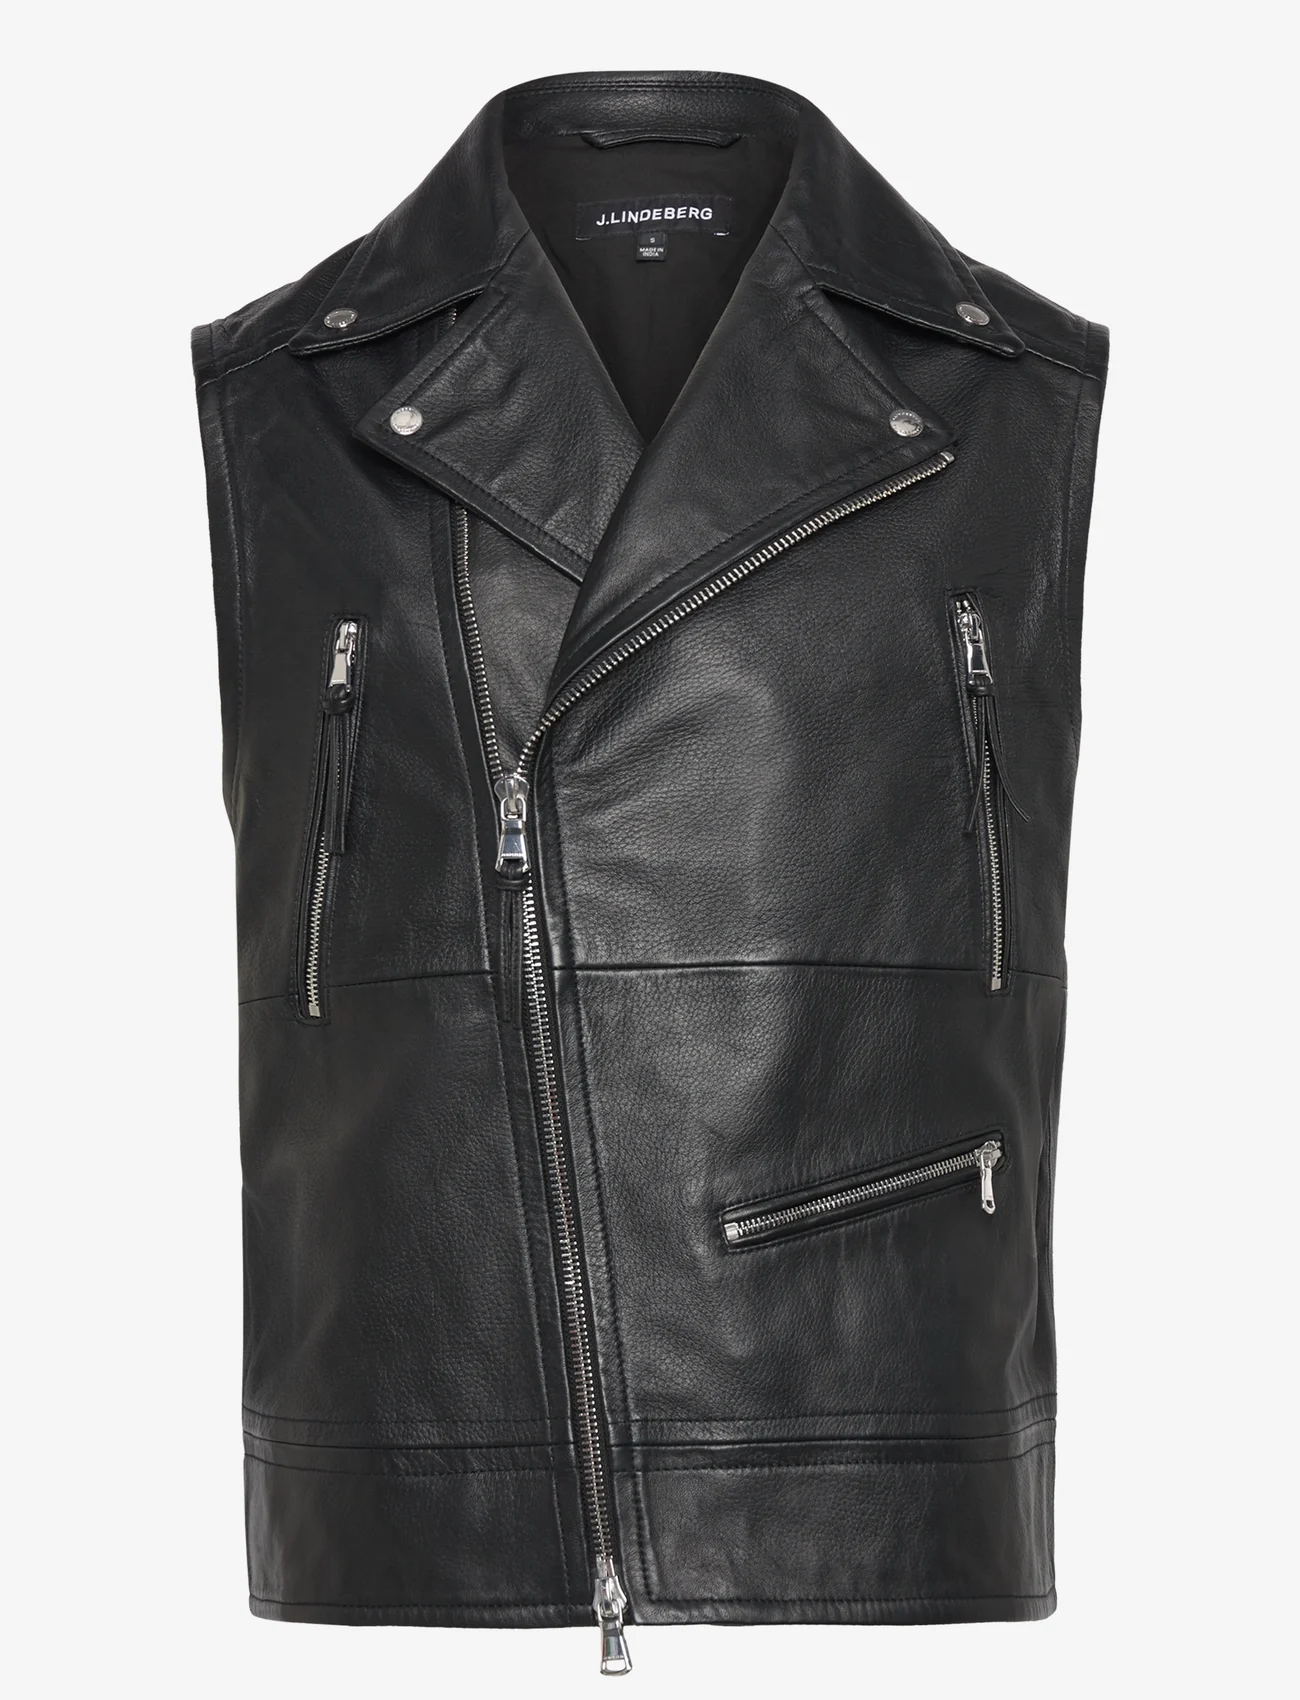 J. Lindeberg - Barrett Leather Biker Vest - spring jackets - black - 0